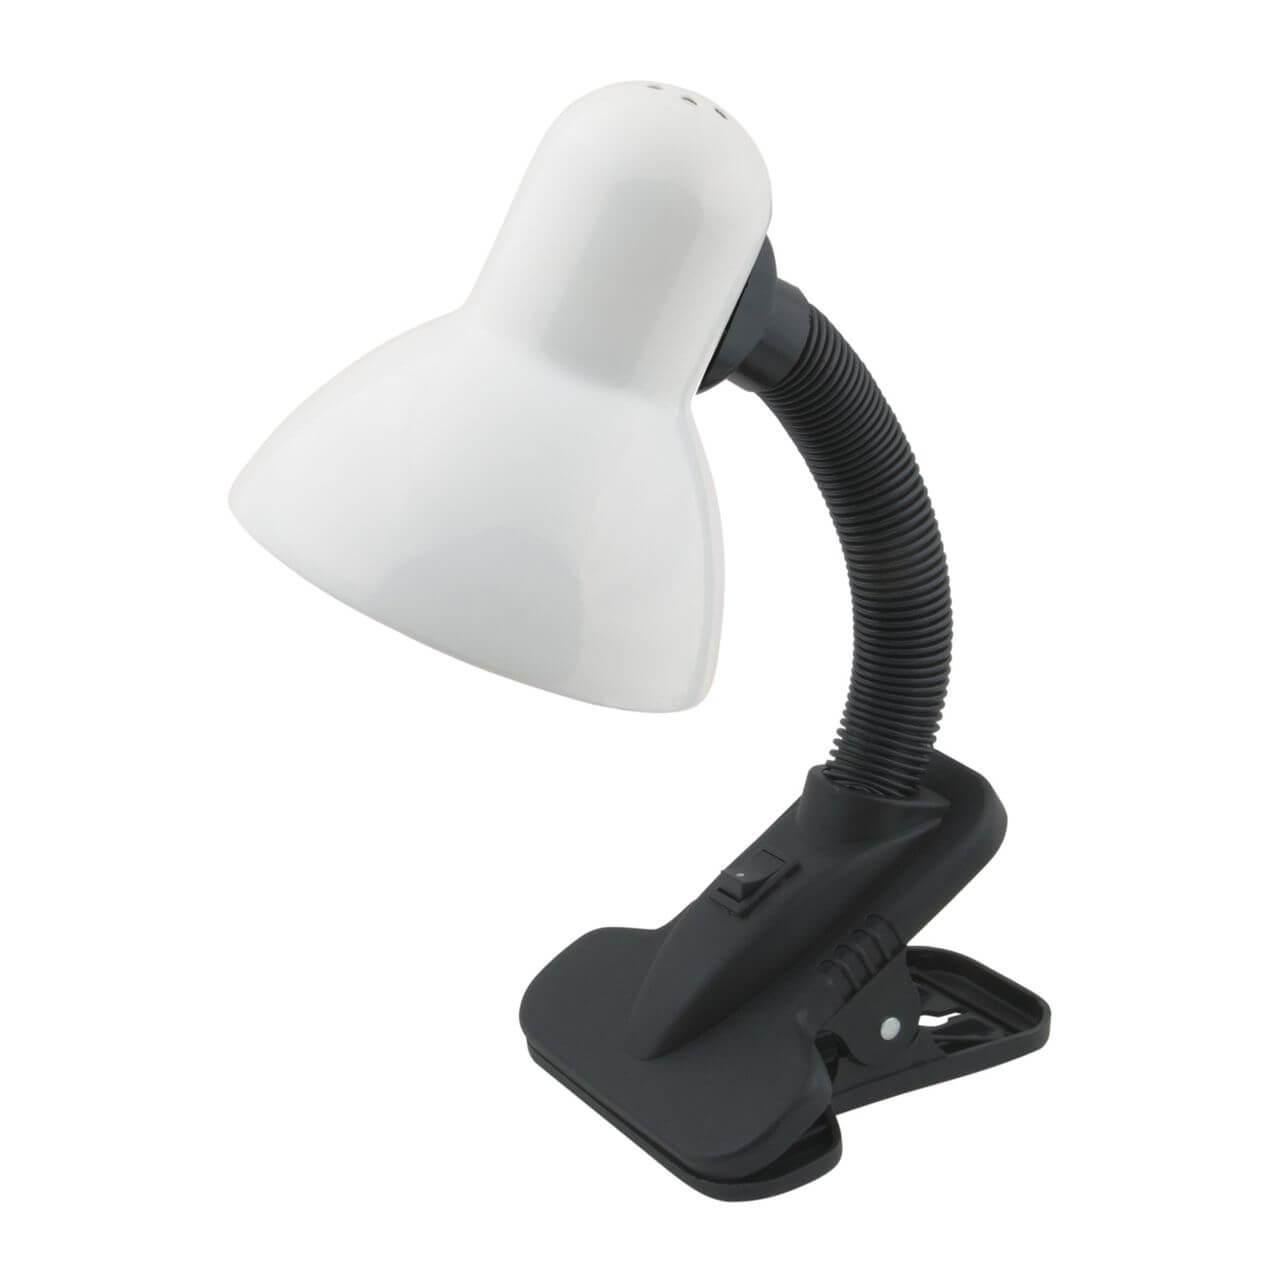 Настольная лампа Uniel TLI-206 White E27 02464 лампа люминесцентная tdm electric t8 g13 18 вт теплый белый свет sq0355 0025